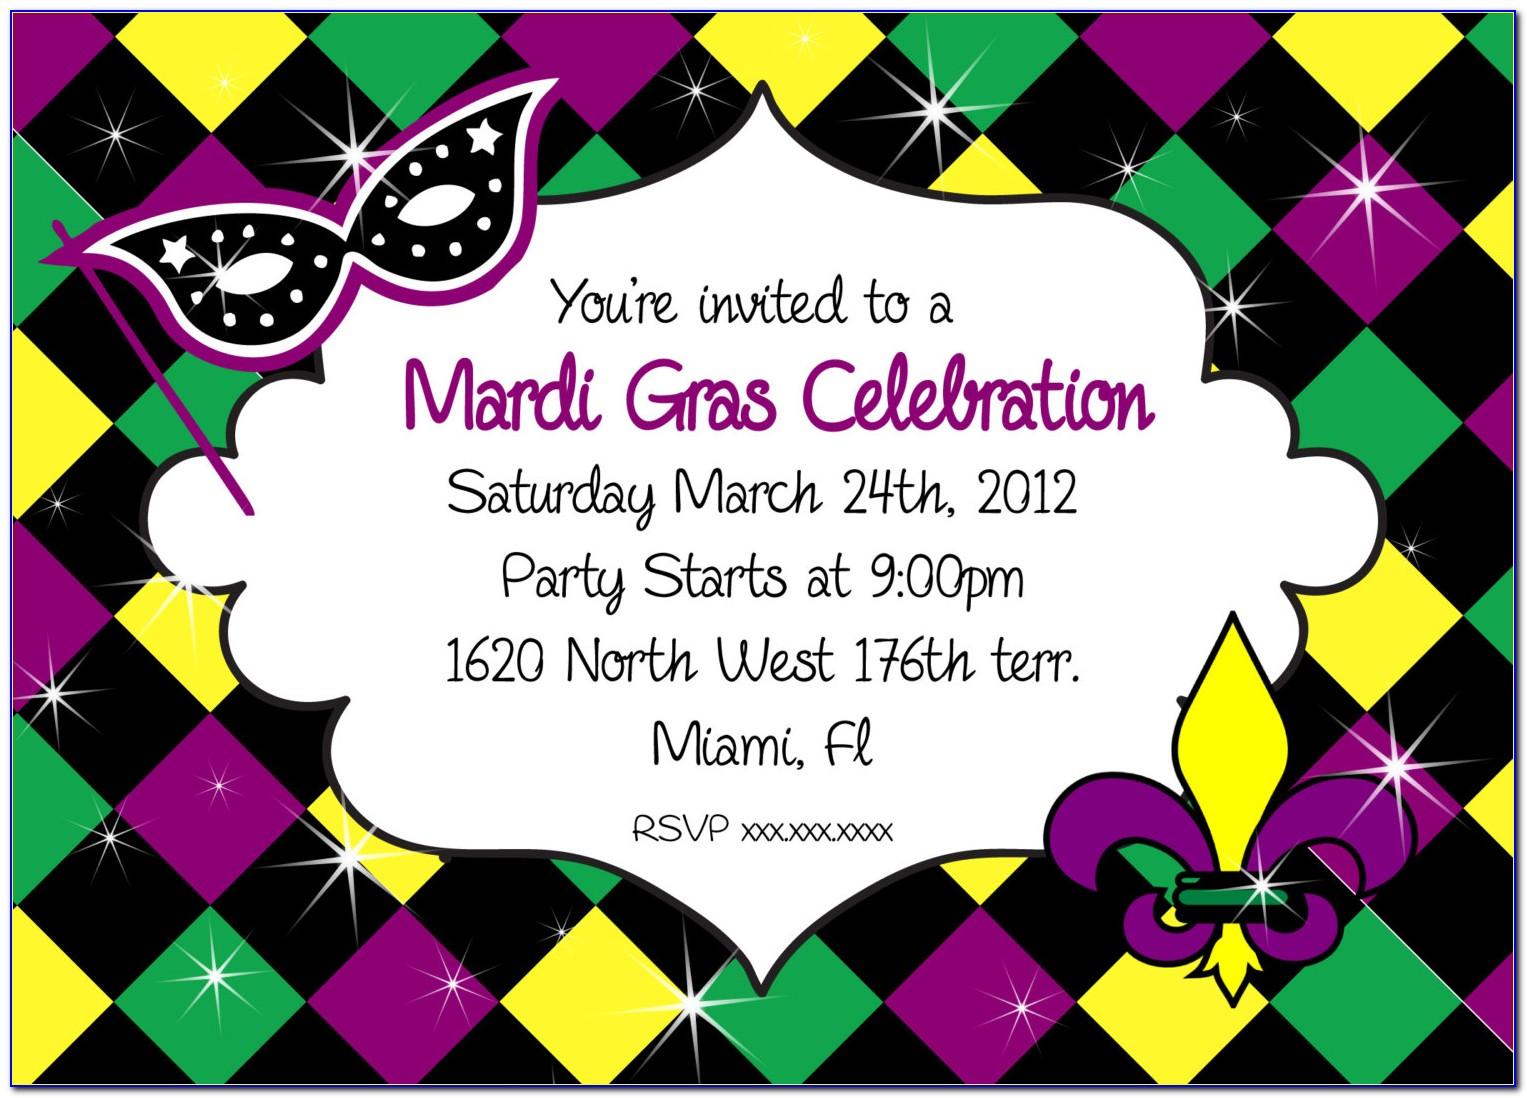 Mardi Gras Party Invitation Template Free